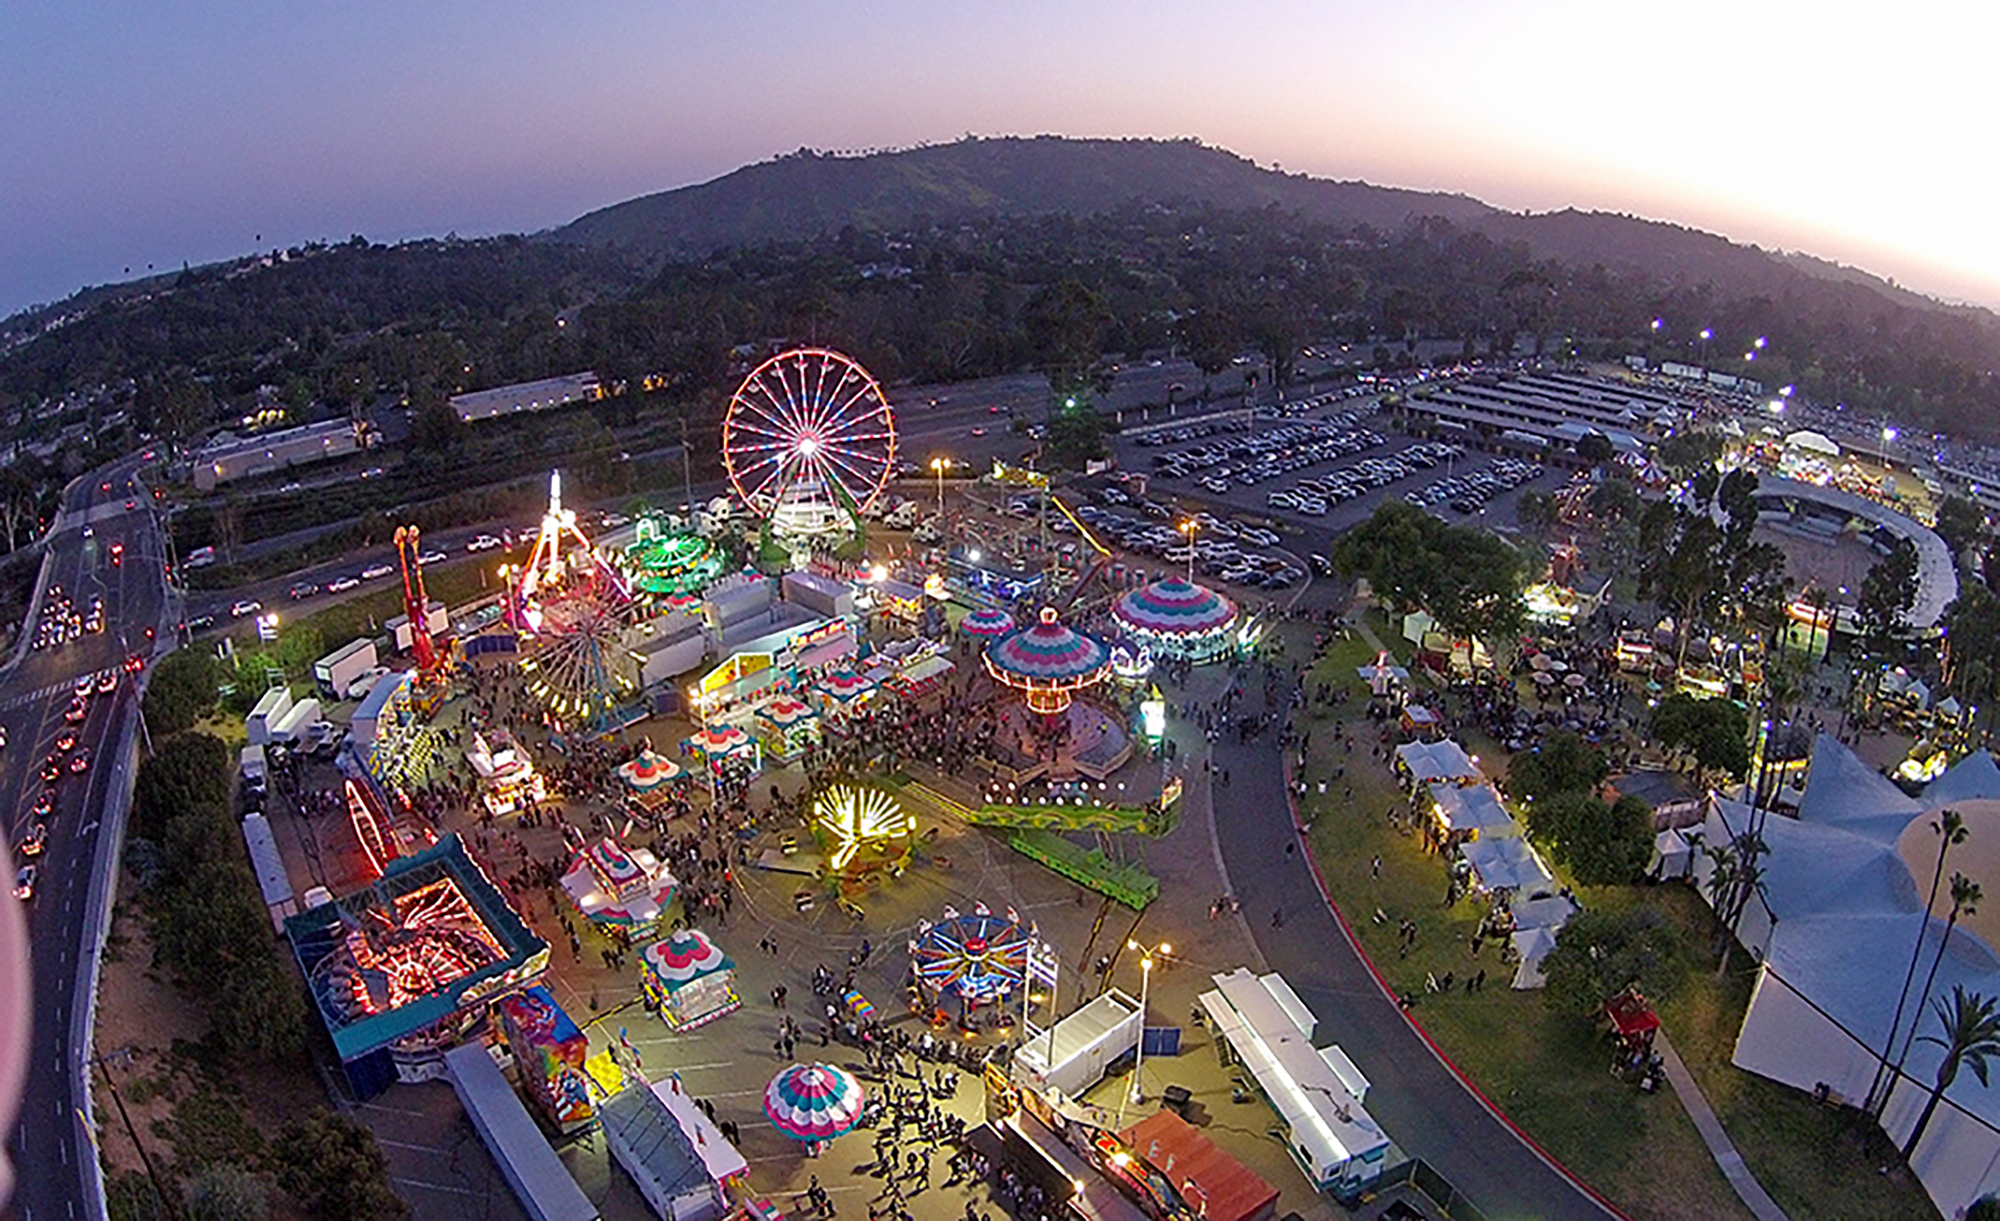 Santa Barbara Fair 2016 | Santa Barbara